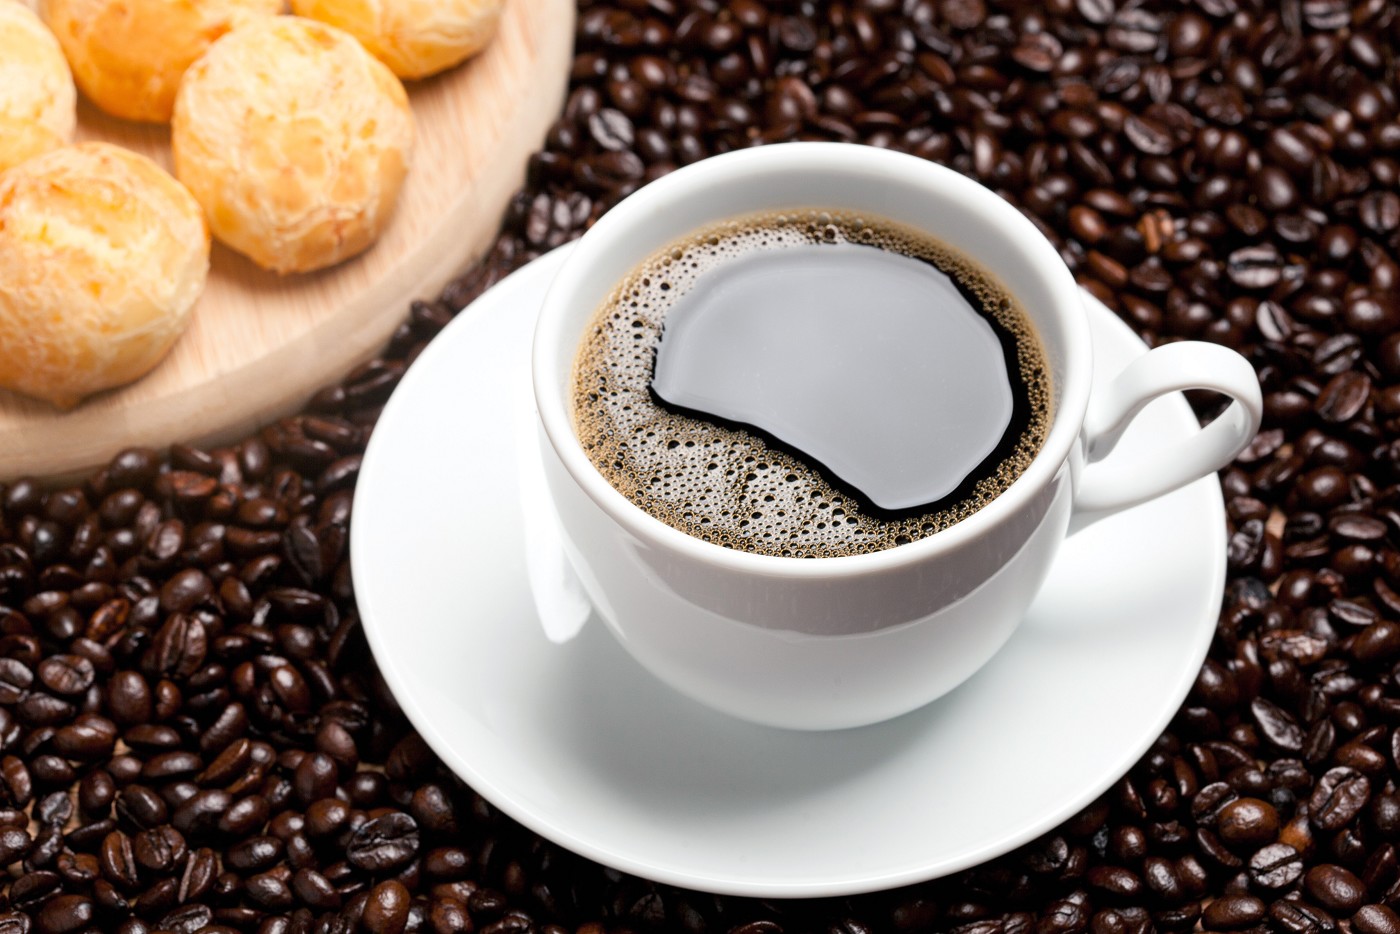 Xicara e grãos de café (Foto: Reprodução, ALMG)